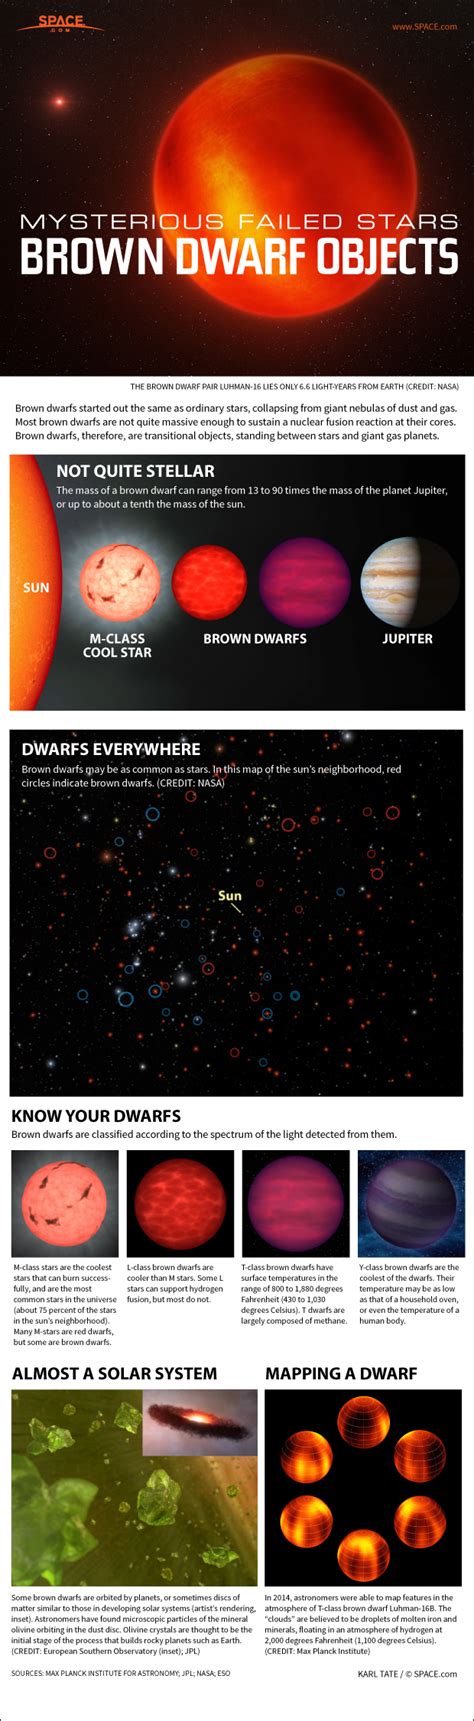 Is brown dwarf a failed star?